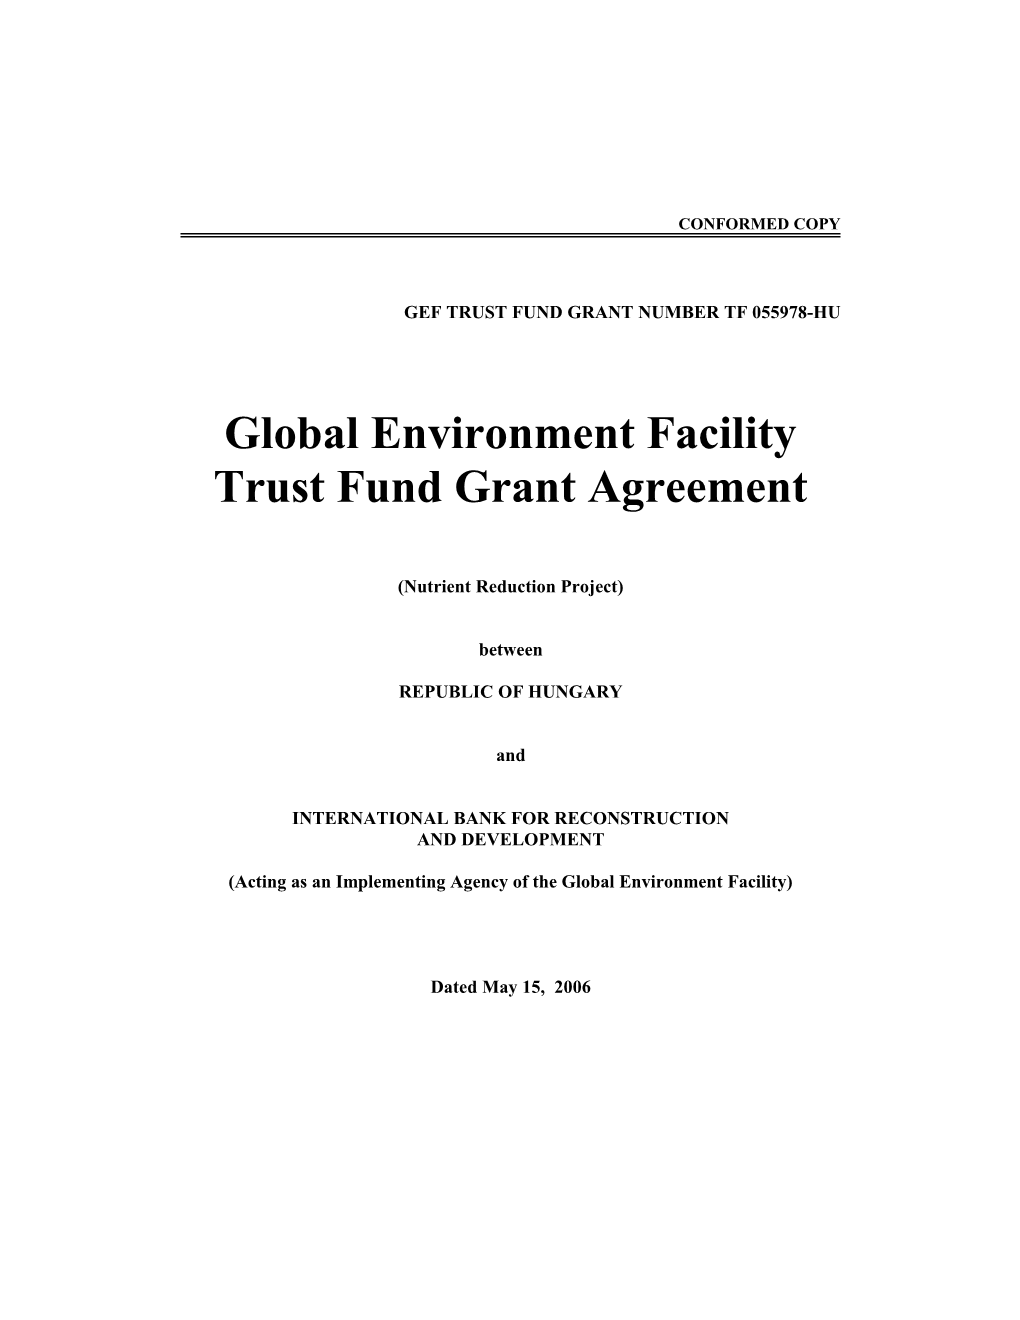 W-3293 (GEF Trust Fund Grant Agreement)